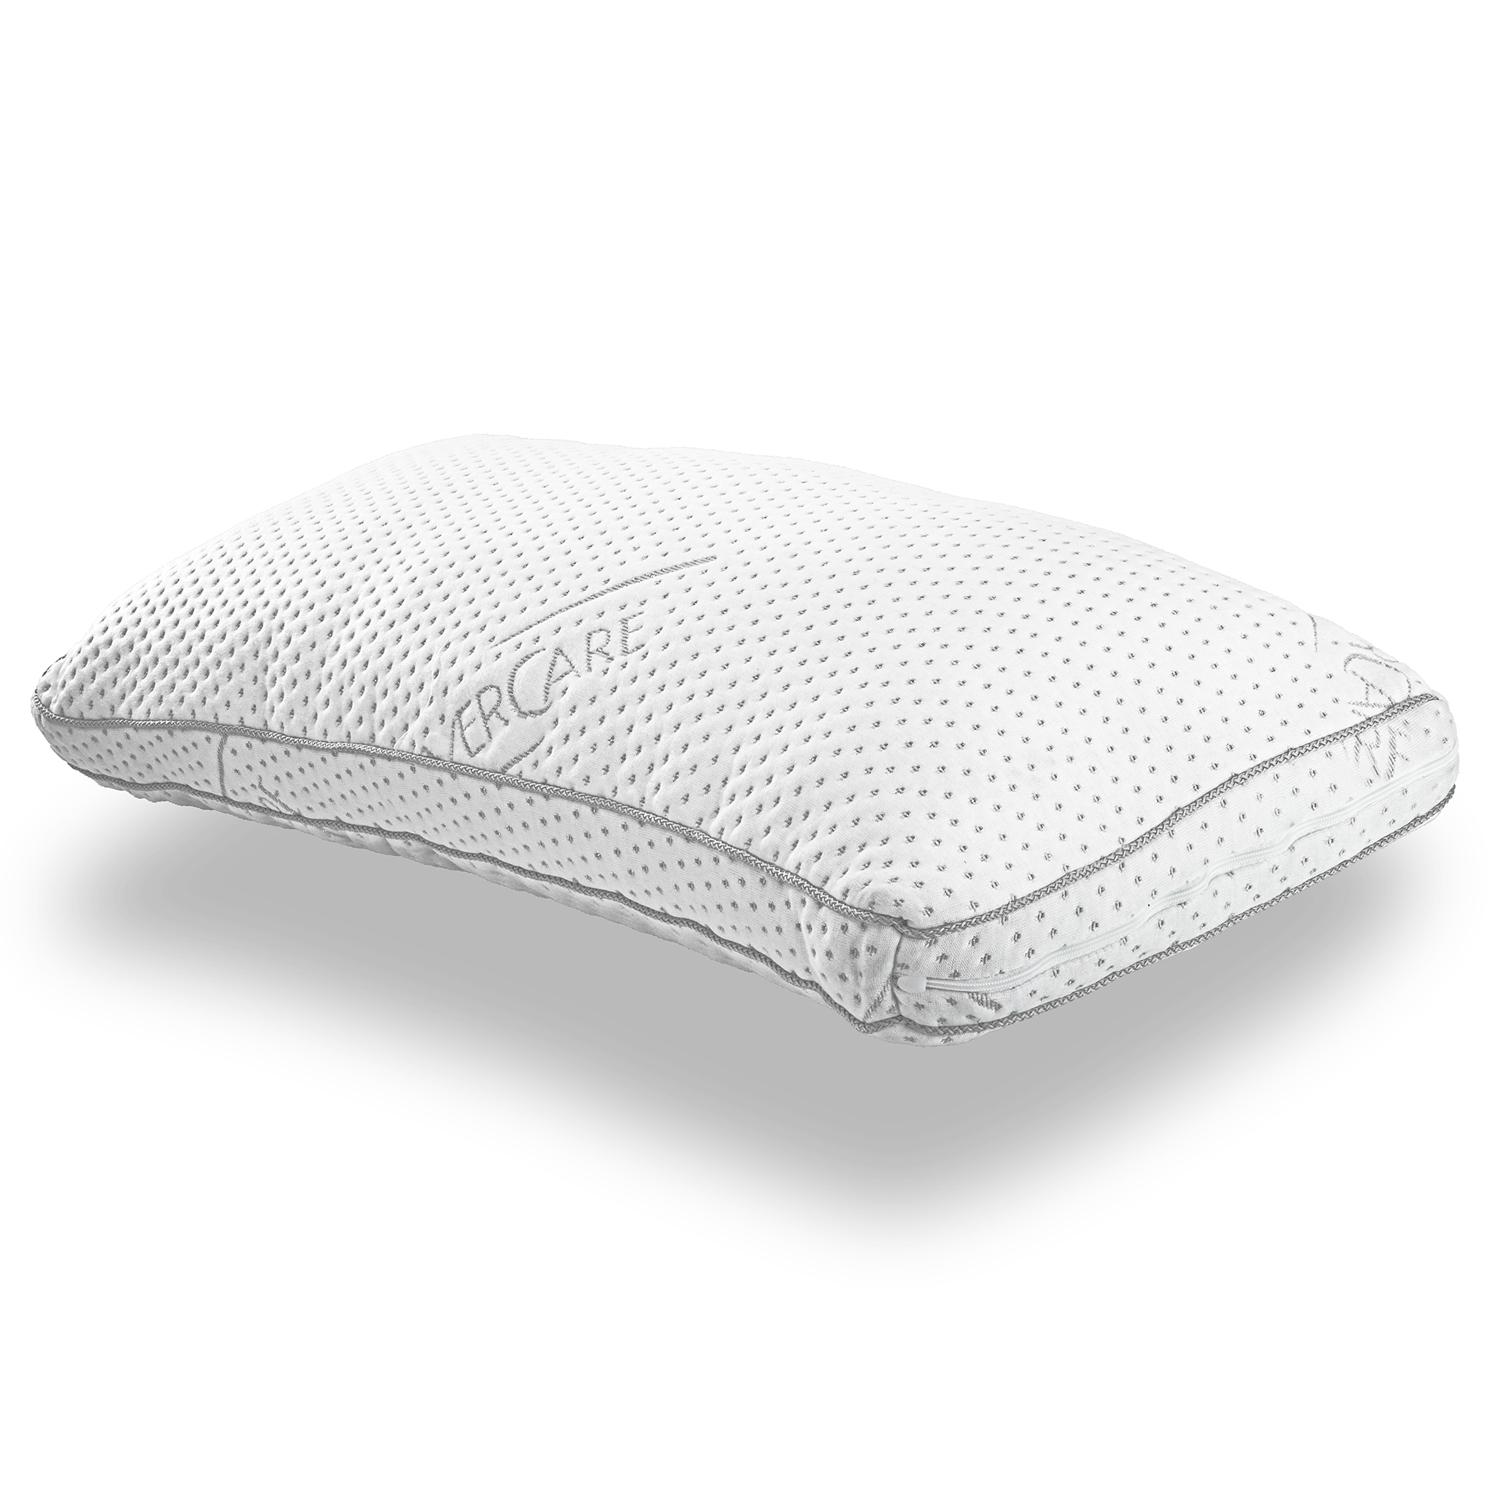 Supportho almohada viscoelástica confort 40 x 80 cm